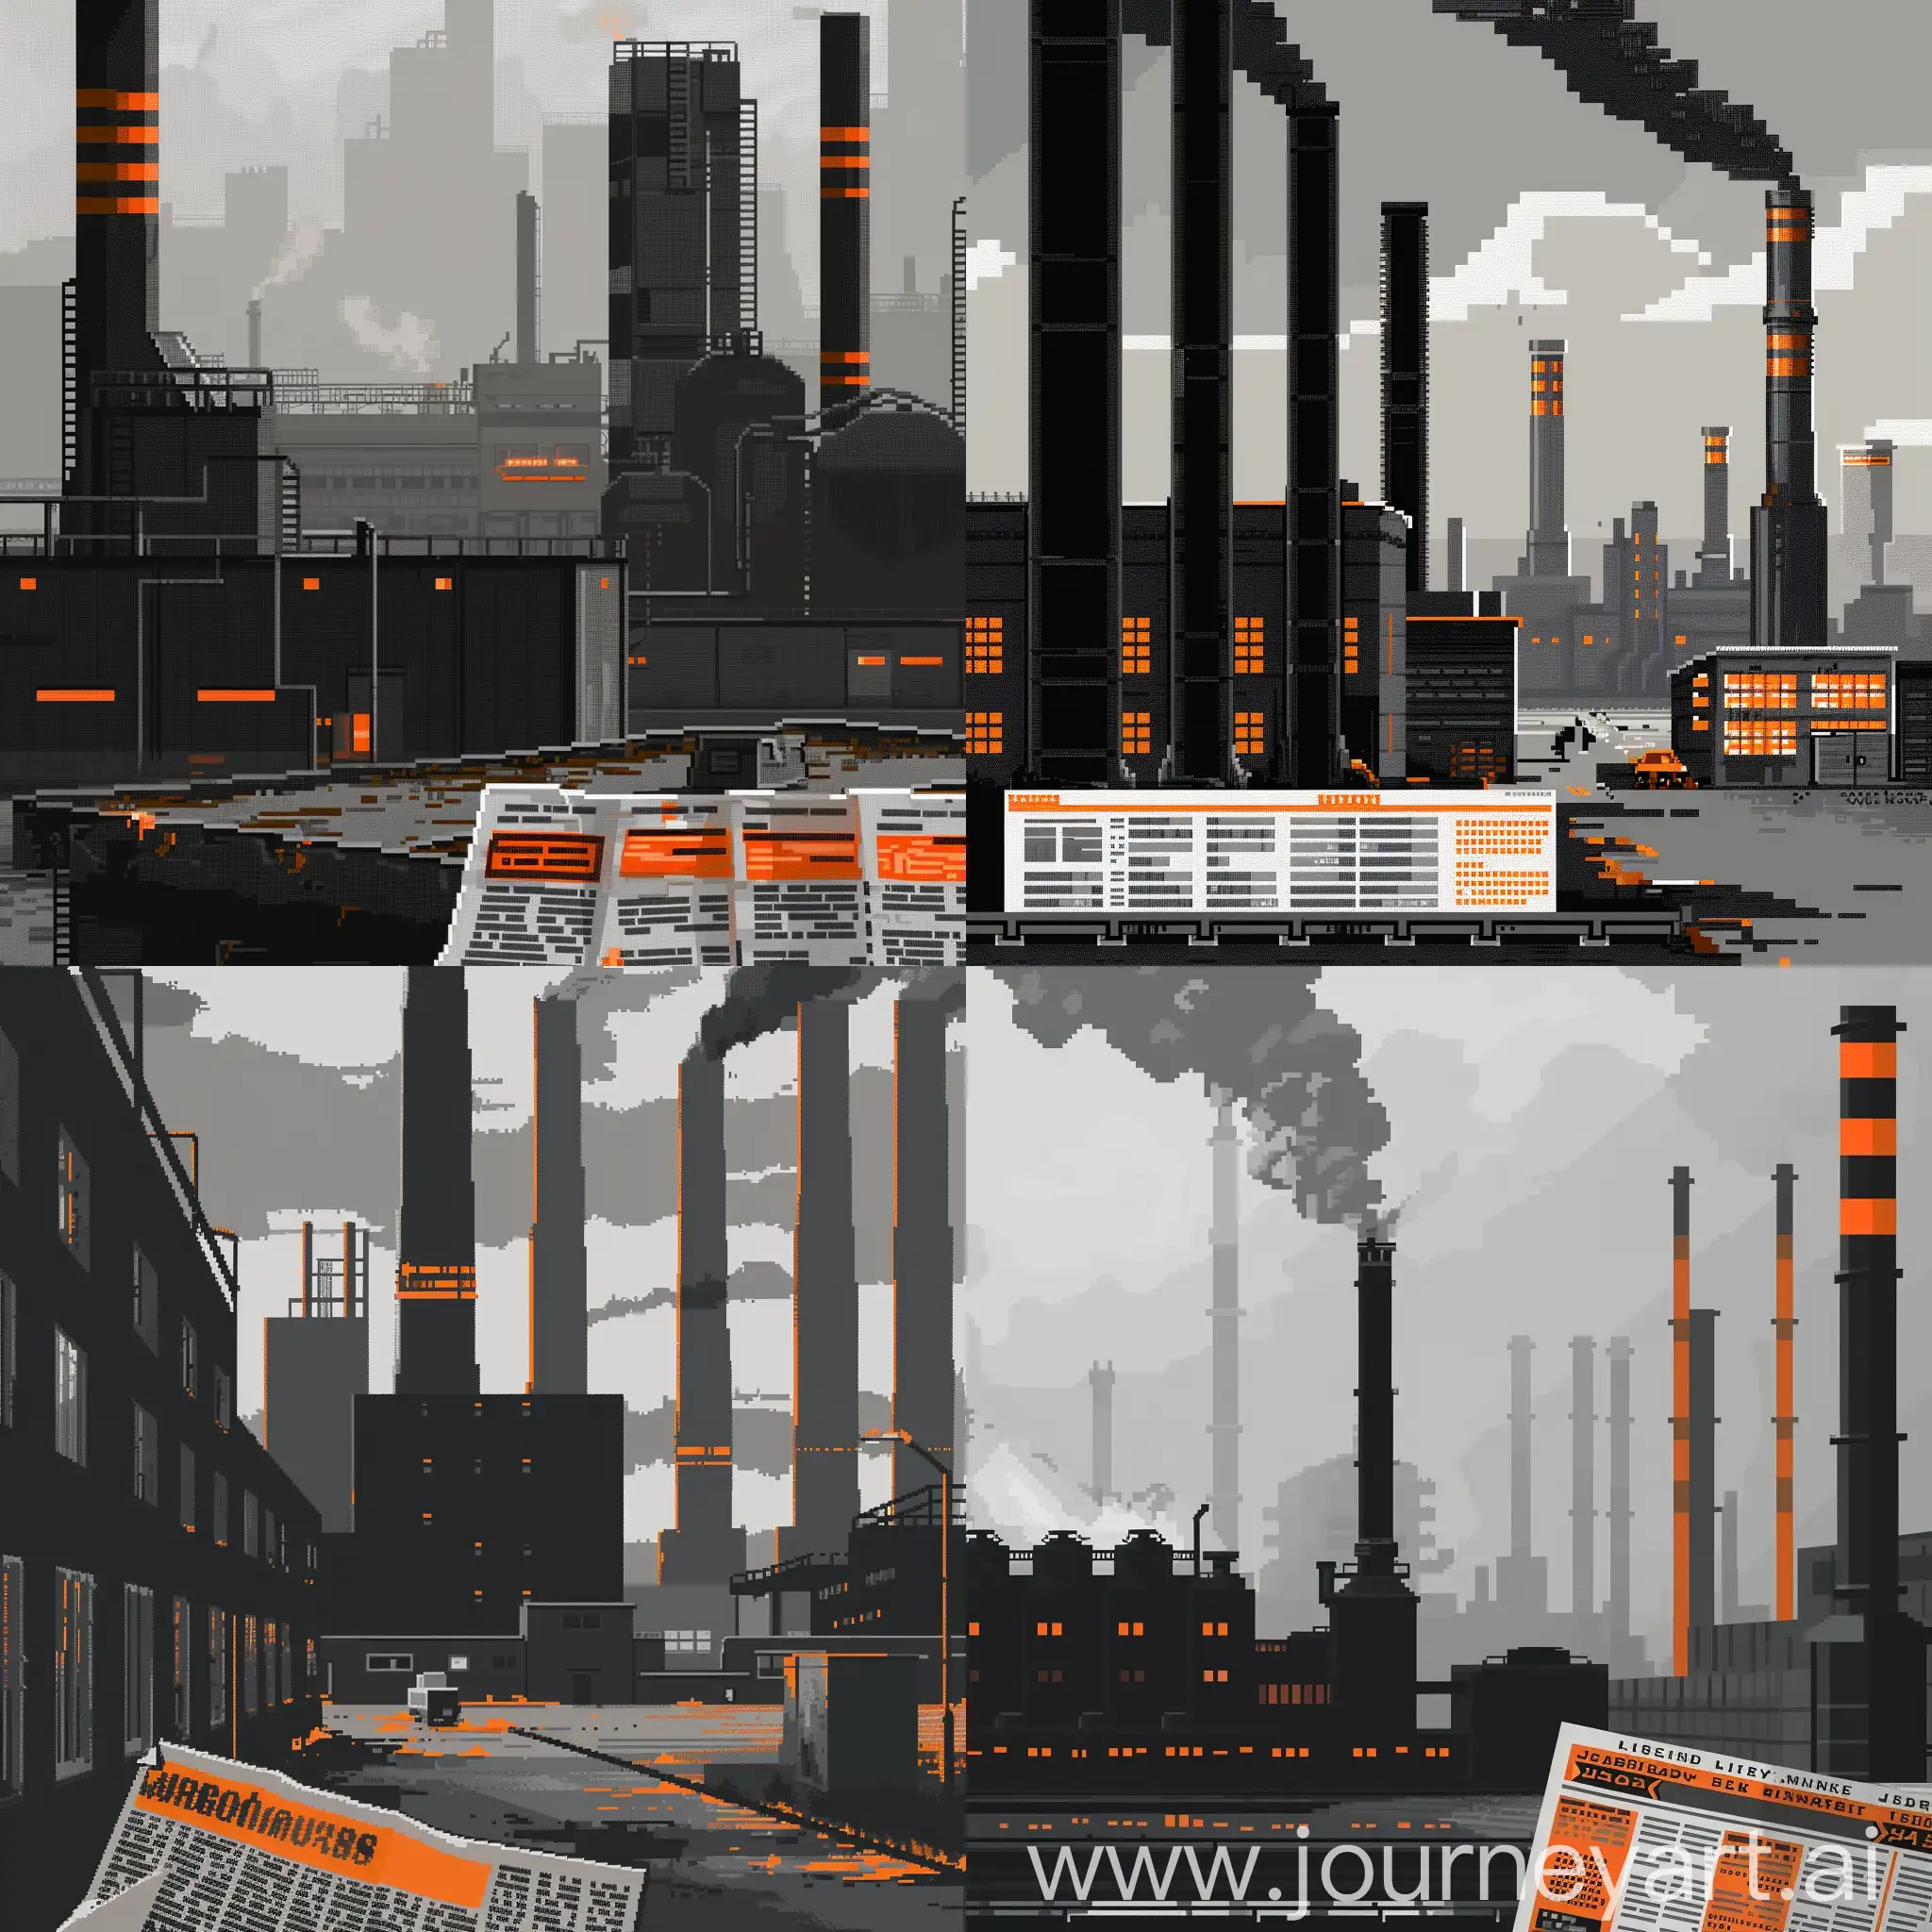 Пиксель арт, чёрные оранживые белые и серые цвета, чёрно-оранжевая фабрика вдалеке а впереди газета с оранжевыми заголовками, серый фон